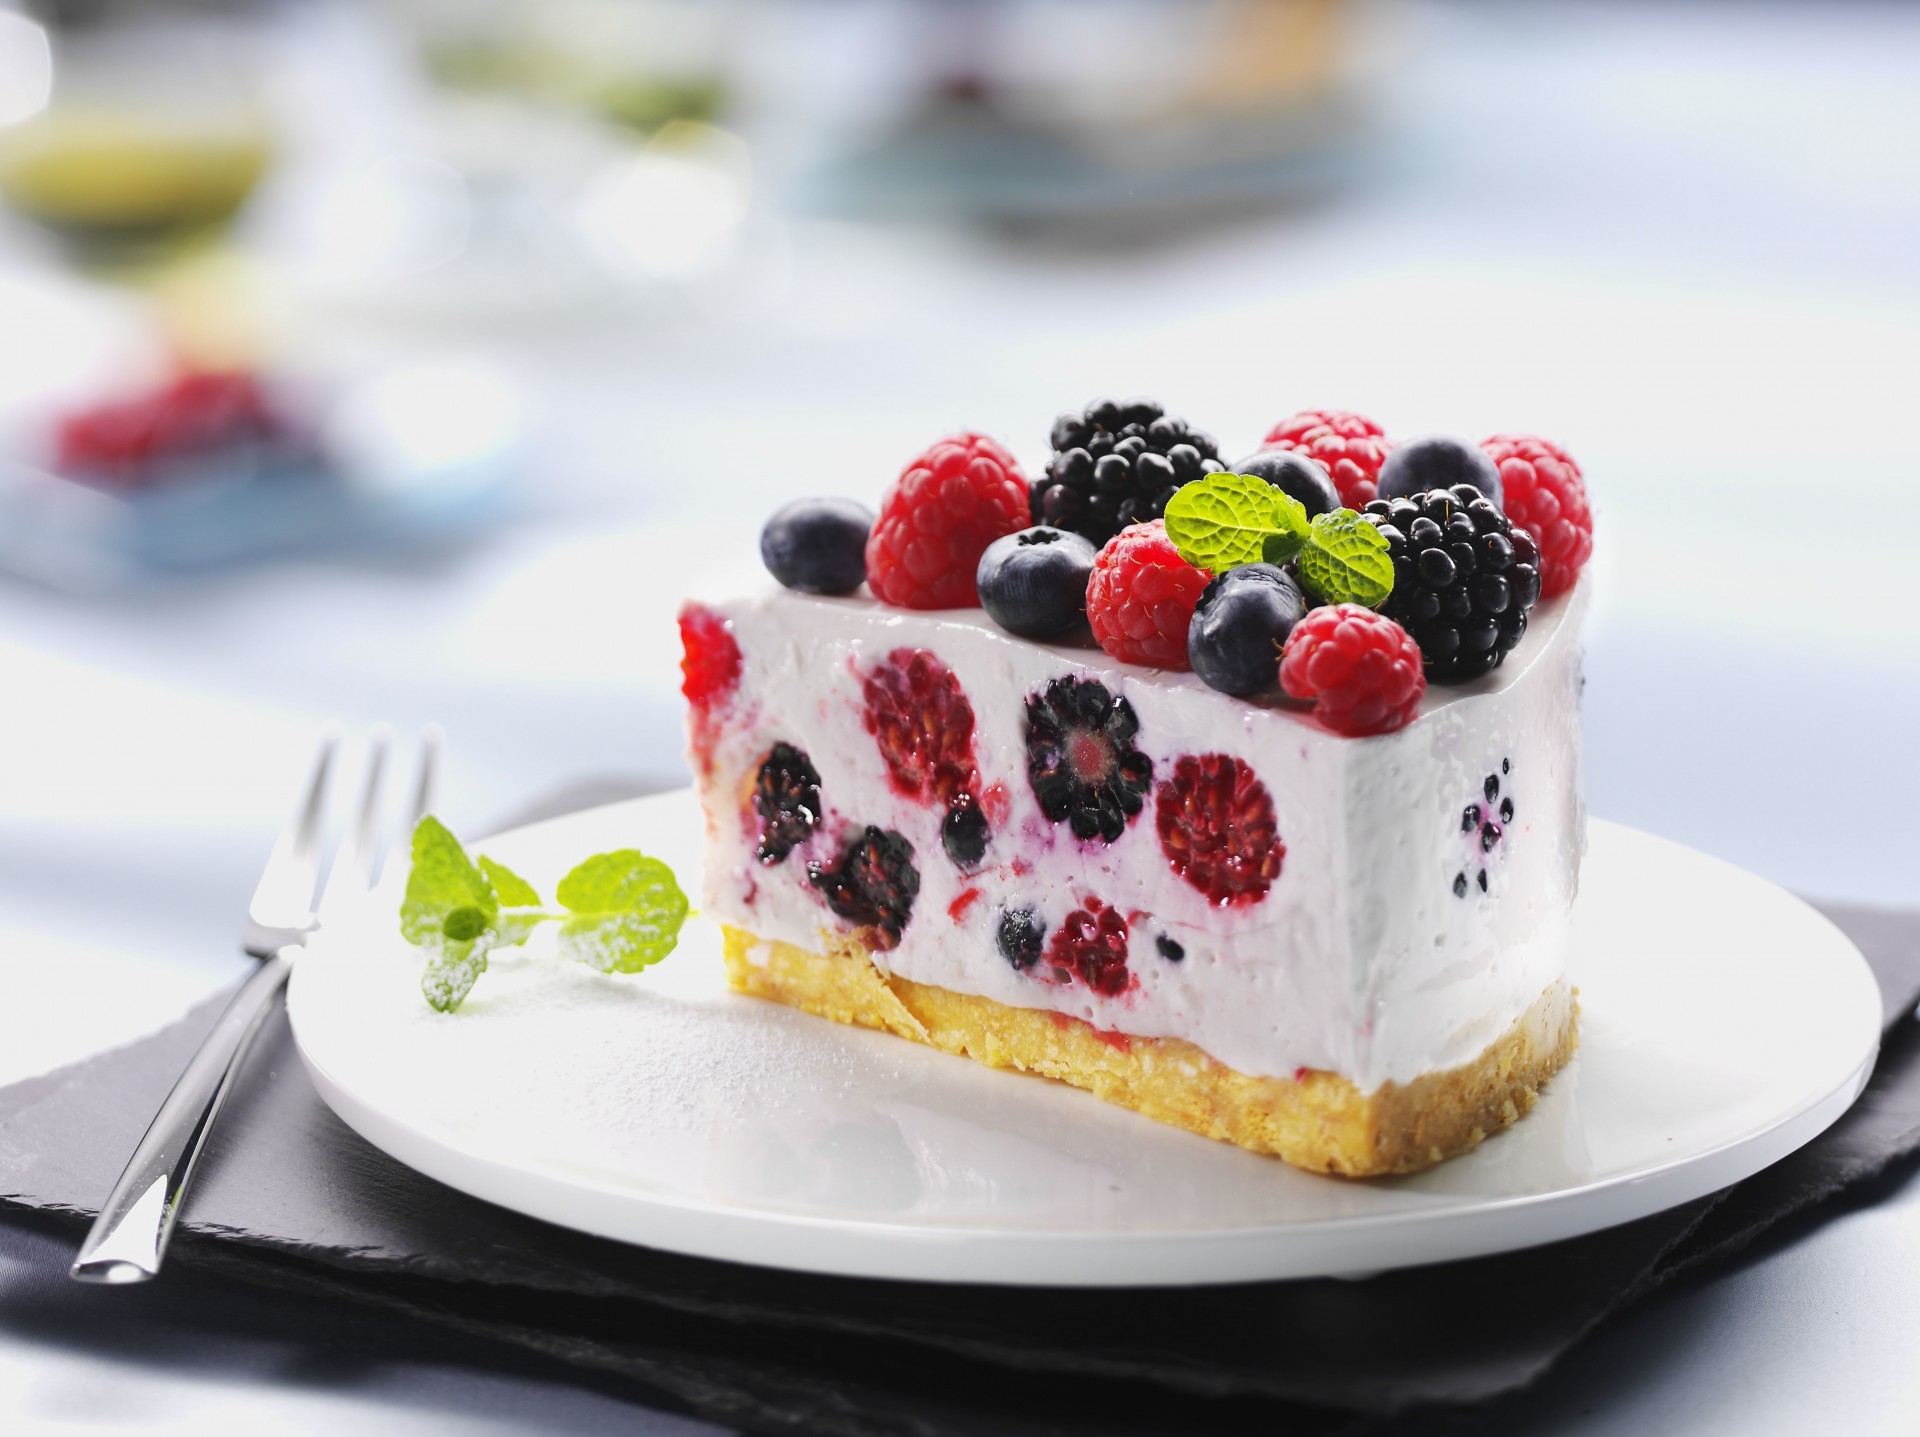 Торт с фруктами — 33 рецепта с фото пошагово. Как приготовить фруктовый торт в домашних условиях?